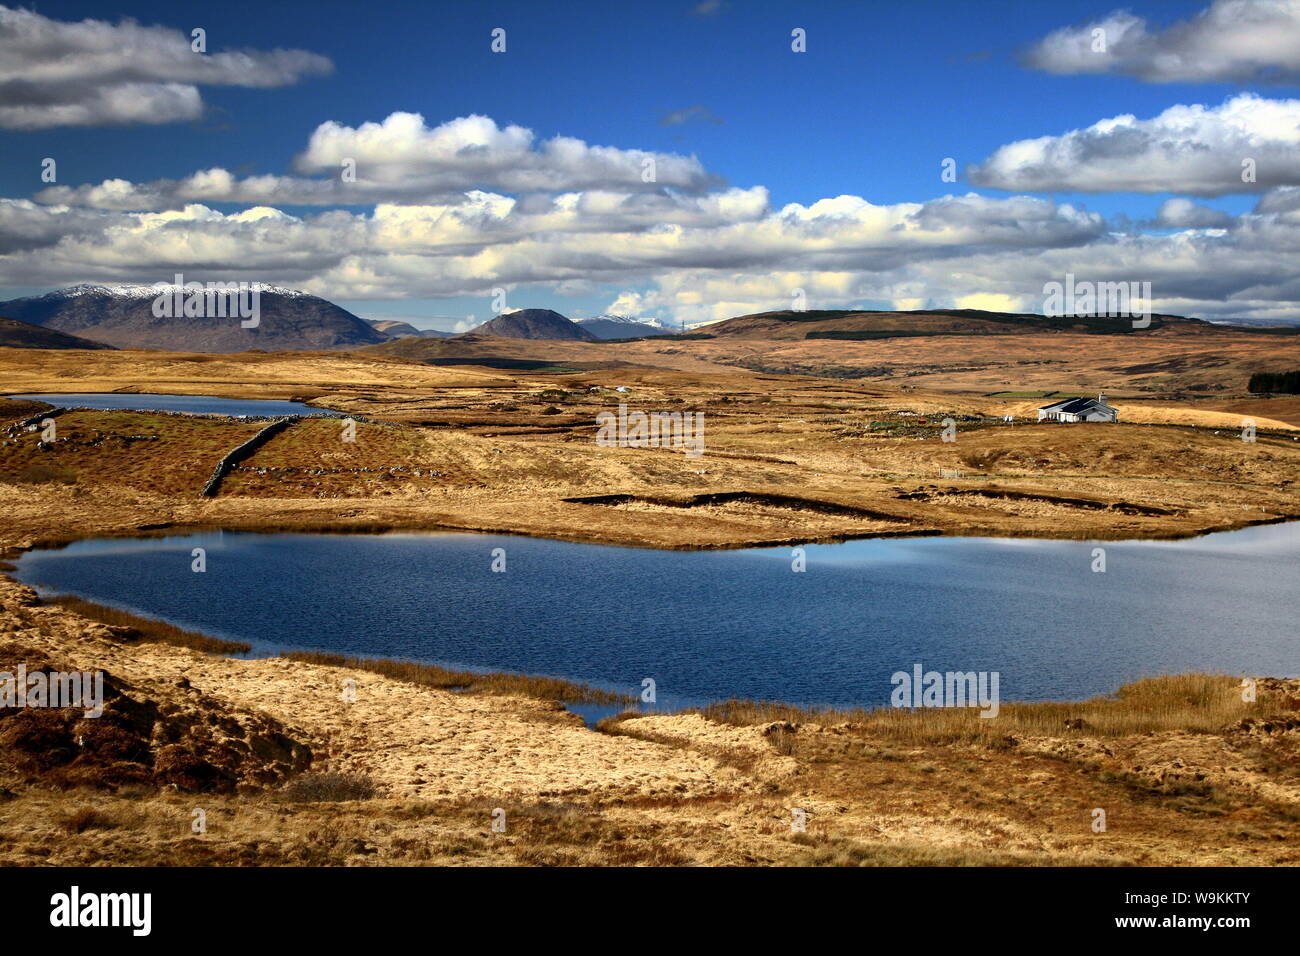 Bellissimo paesaggio irlandese che si affaccia su un lago blu, montagne innevate e nuvole bianche soffici sopra di loro Foto Stock